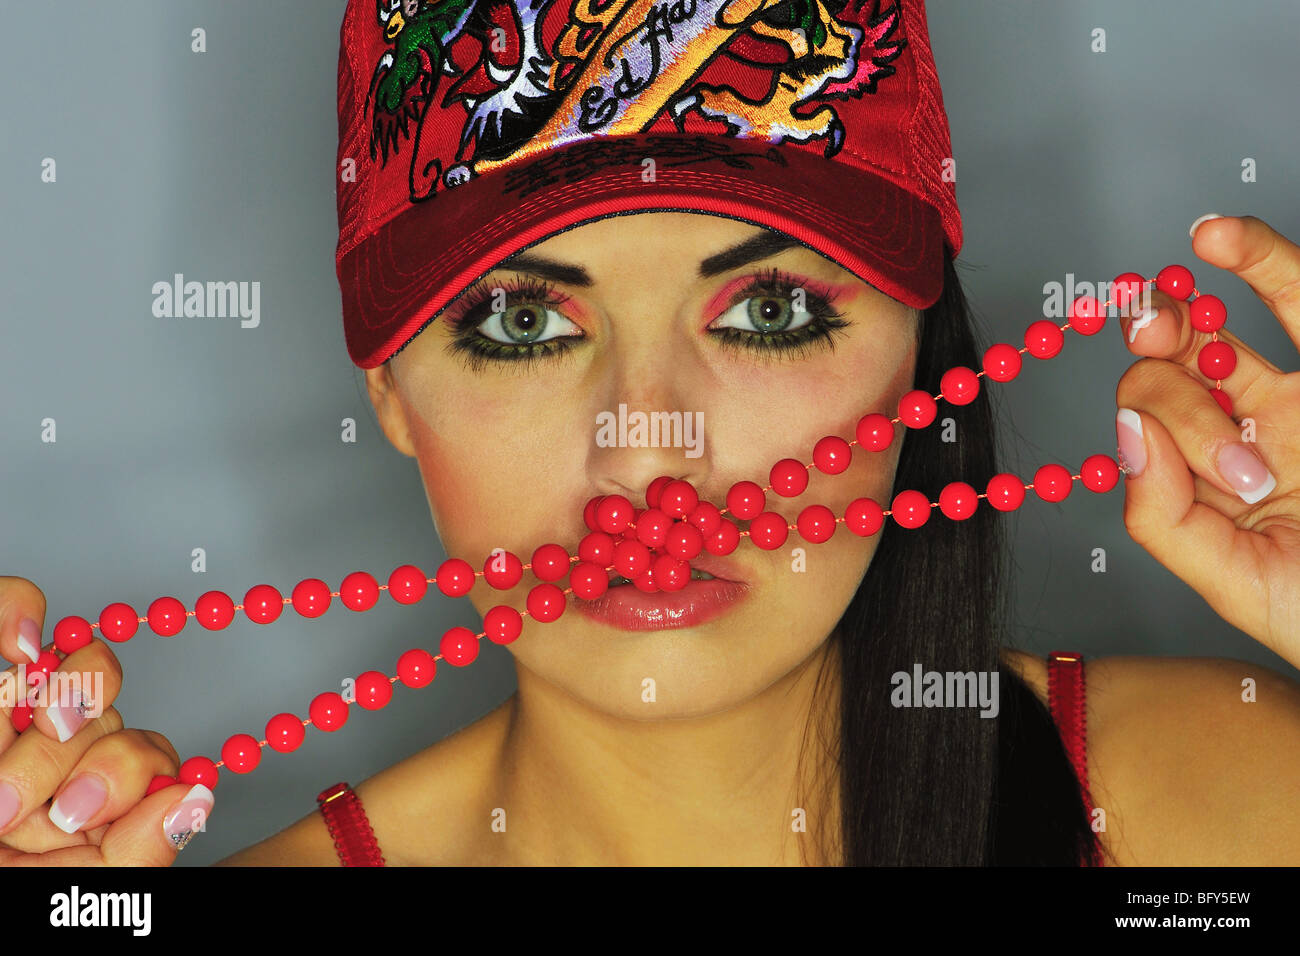 Chicas tumblr fotografías e imágenes de alta resolución - Alamy